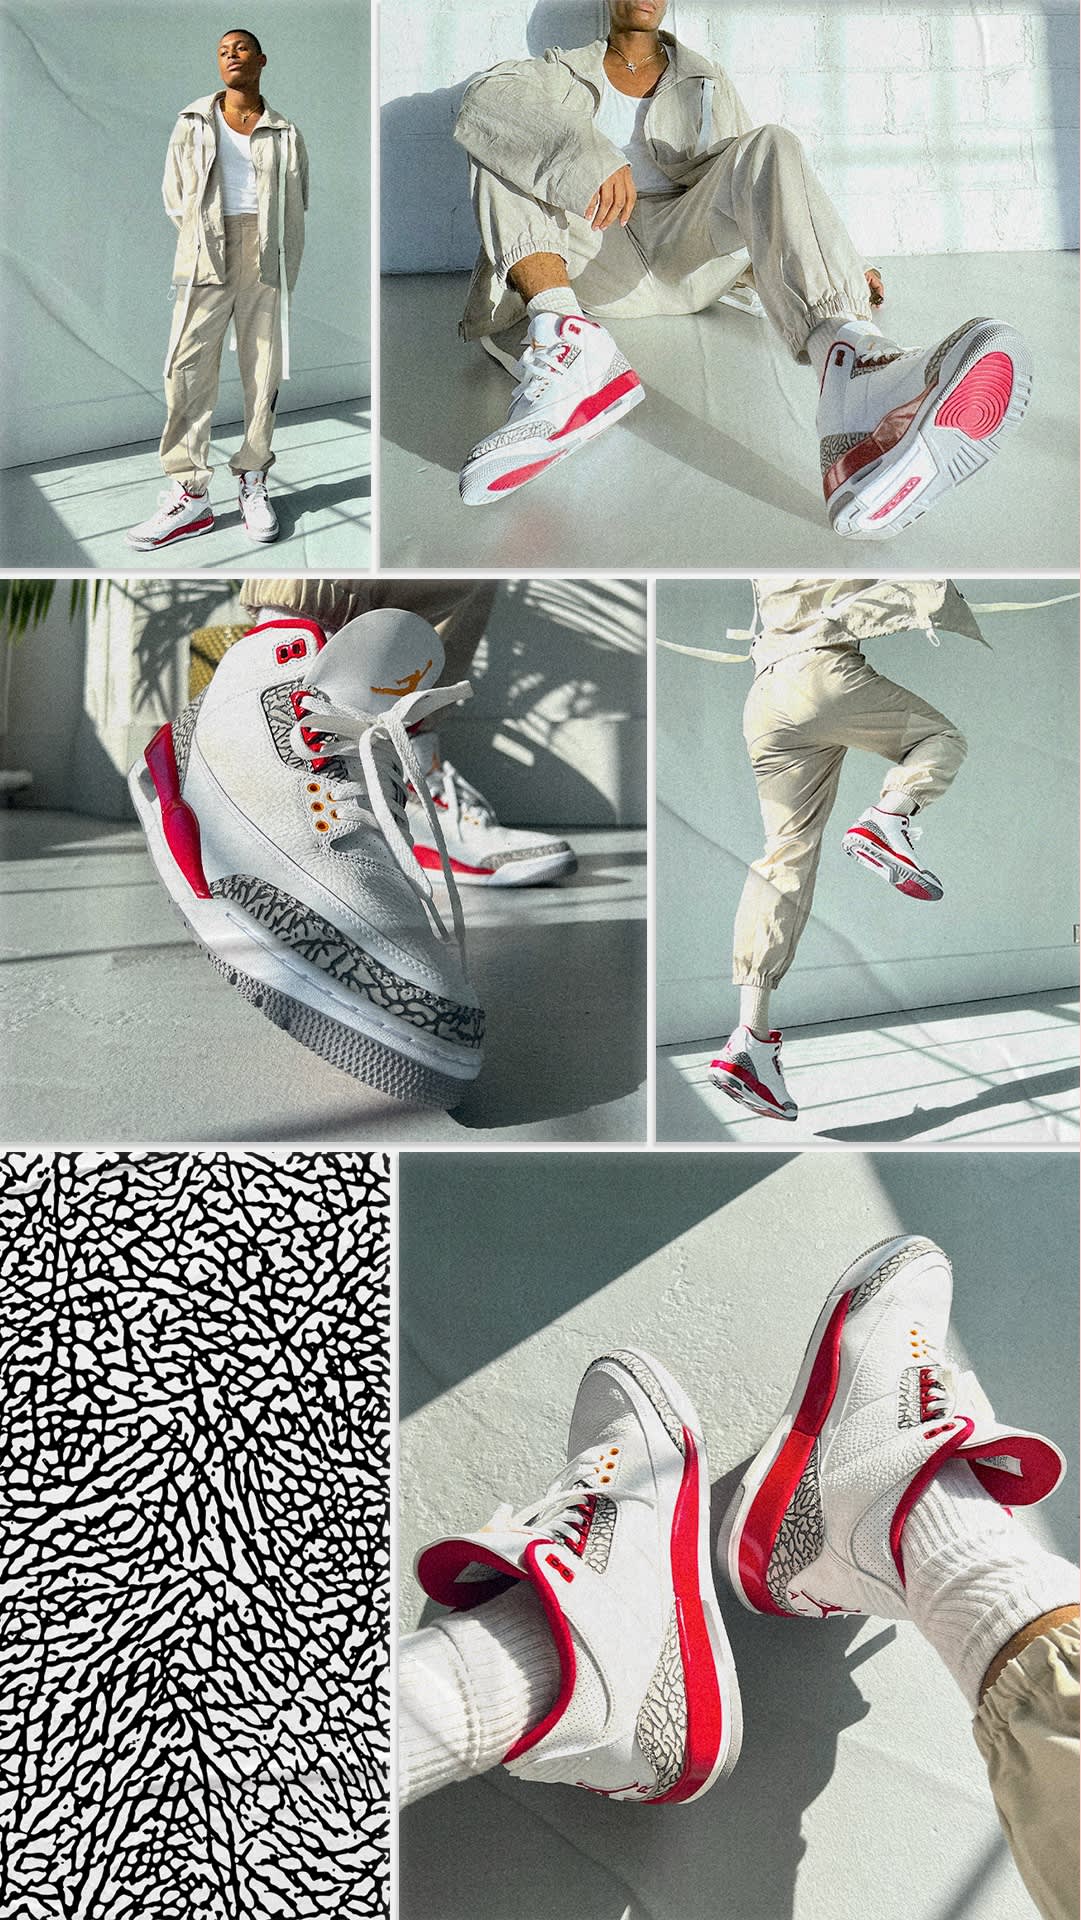 Air Jordan 3 \